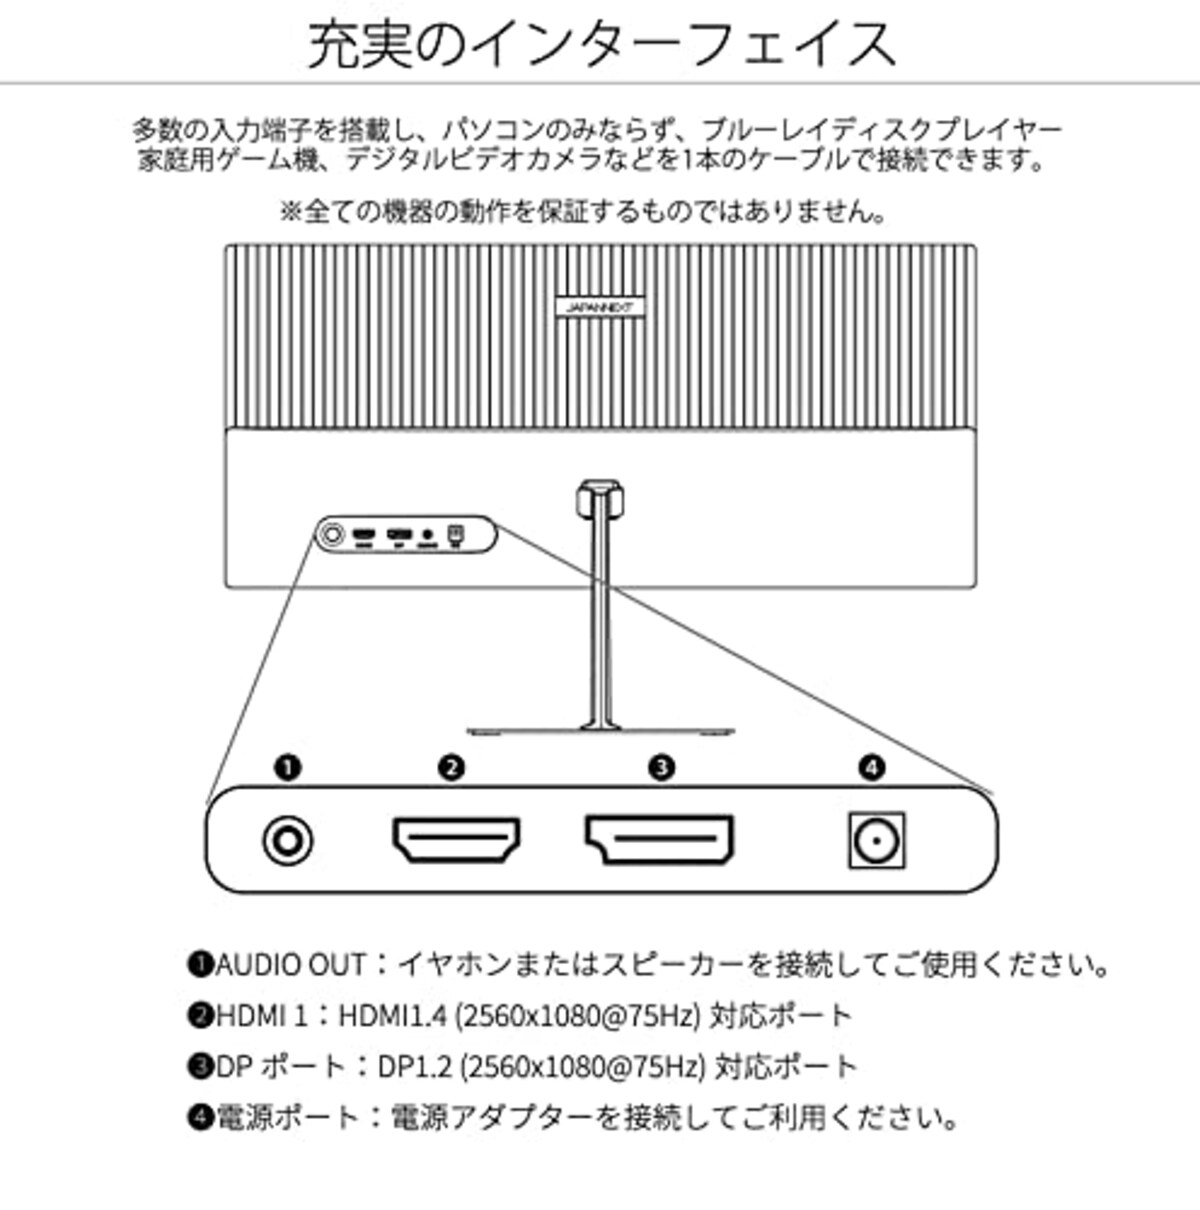  JAPANNEXT 23.3インチ ワイドFHD(2560 x 1080) 液晶モニター JN-V233WFHD HDMI DP ウルトラワイド画像6 